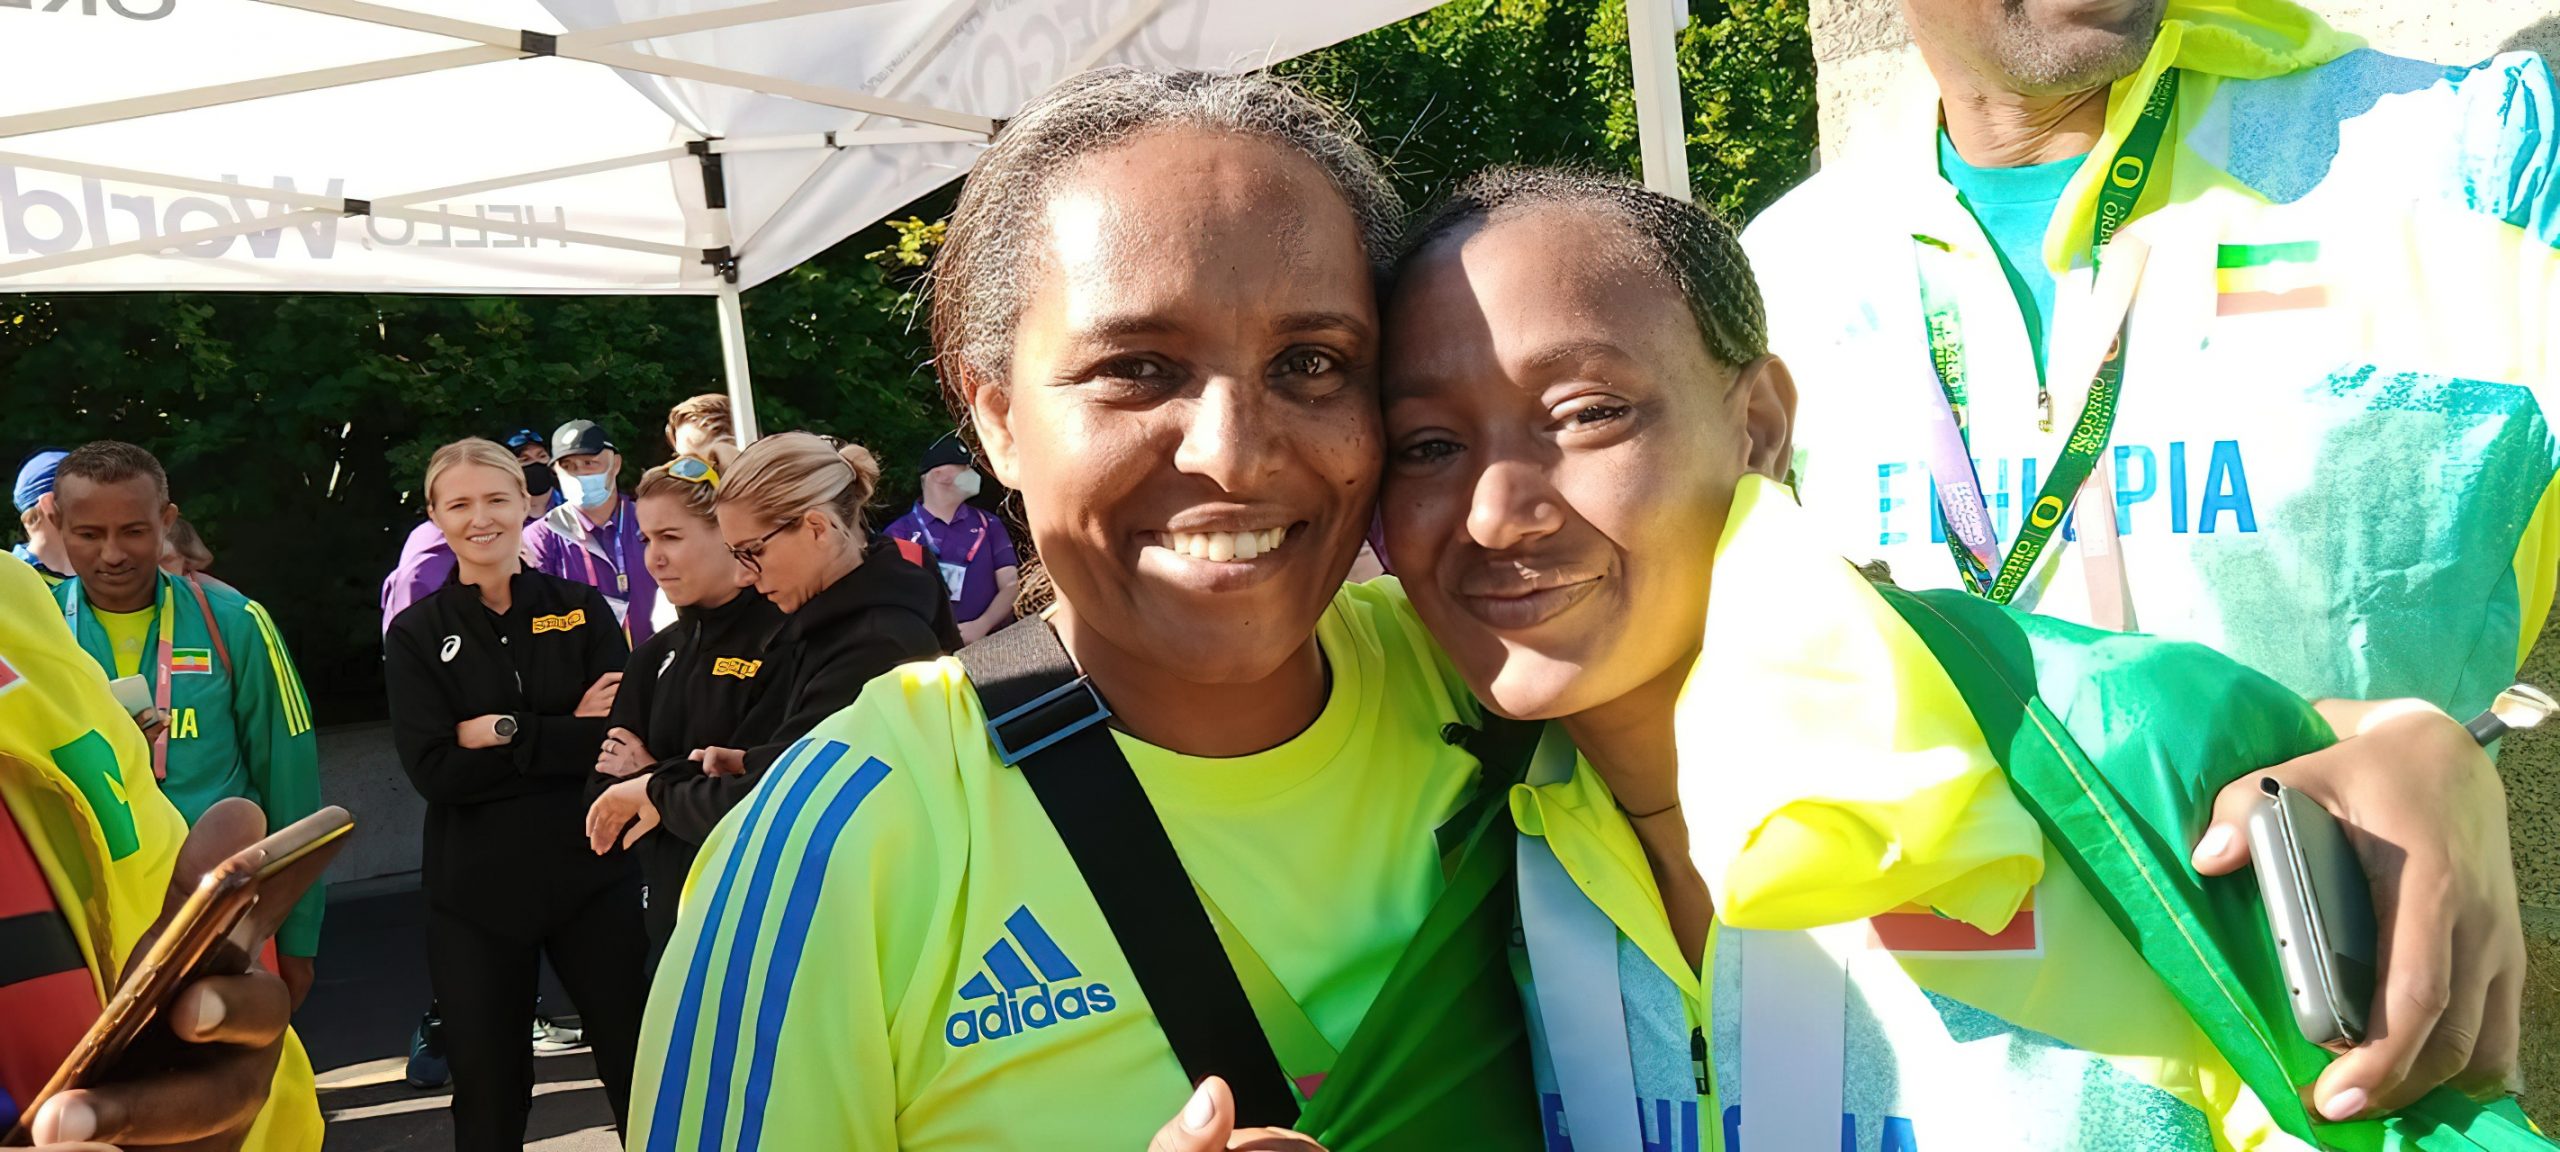 Ethiopian Athletics Team